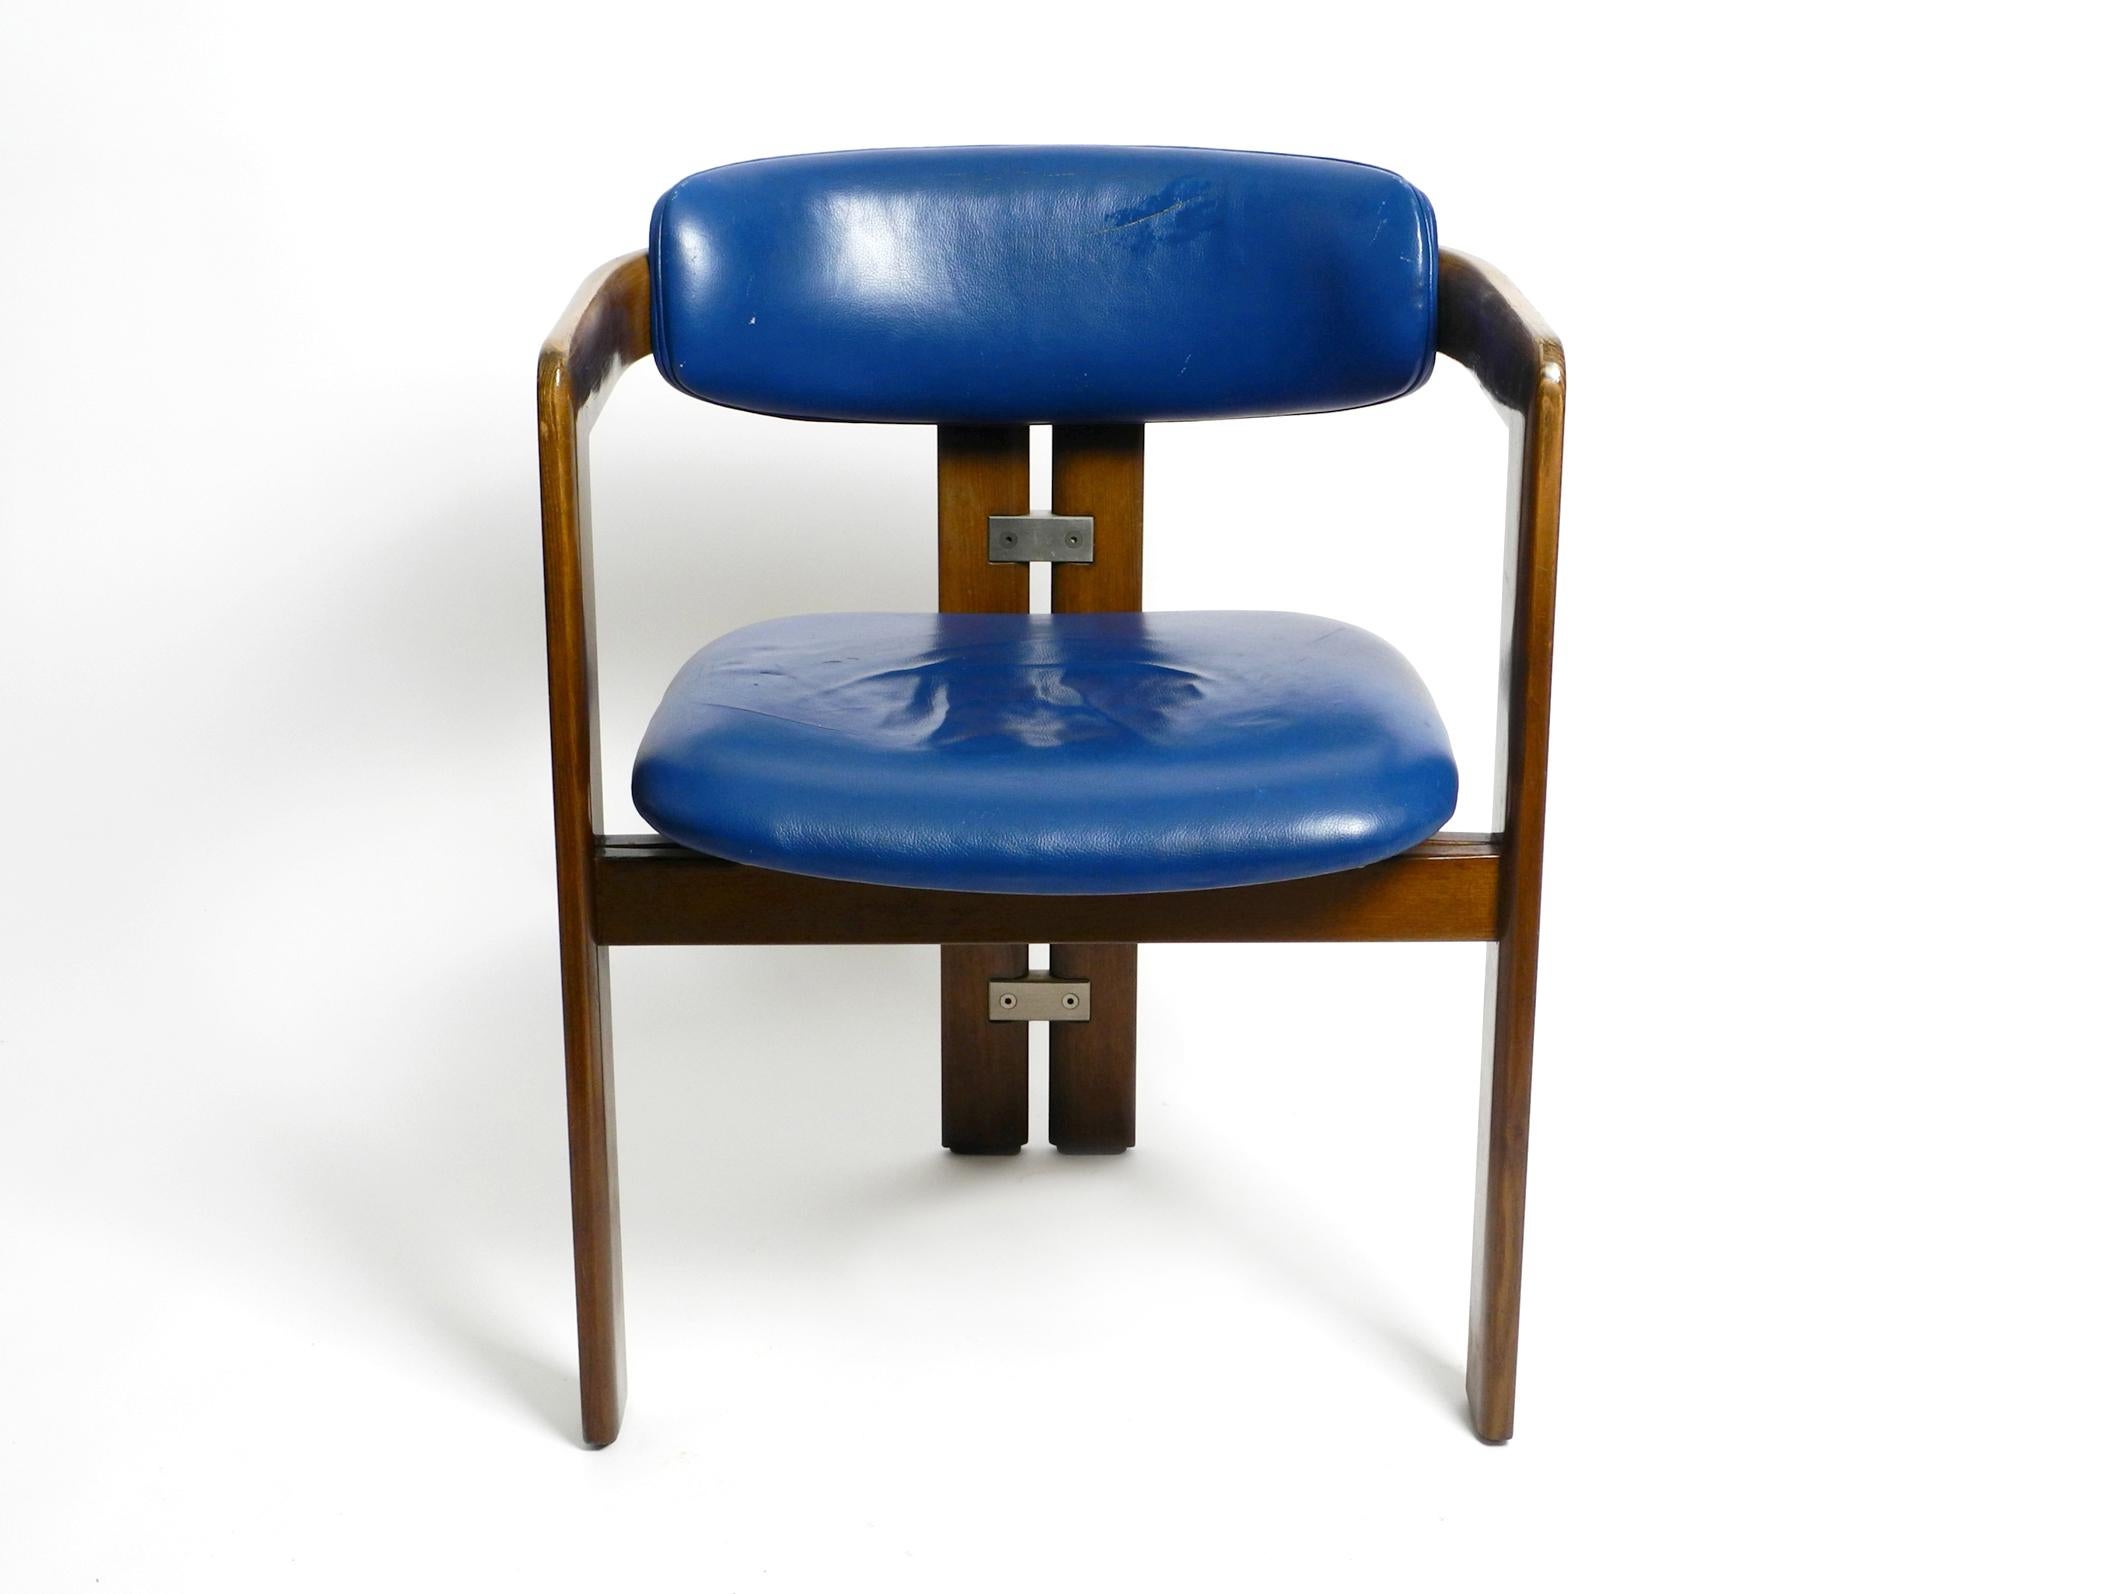 Une chaise Pamplona d'Augusto Savini pour Pozzi en cuir bleu d'origine rare et en bois de hêtre massif. Conçu en Italie en 1965.
Cadre en bois de hêtre teinté foncé. Cette chaise, avec son revêtement en cuir d'origine, date des années 1970.
100 %